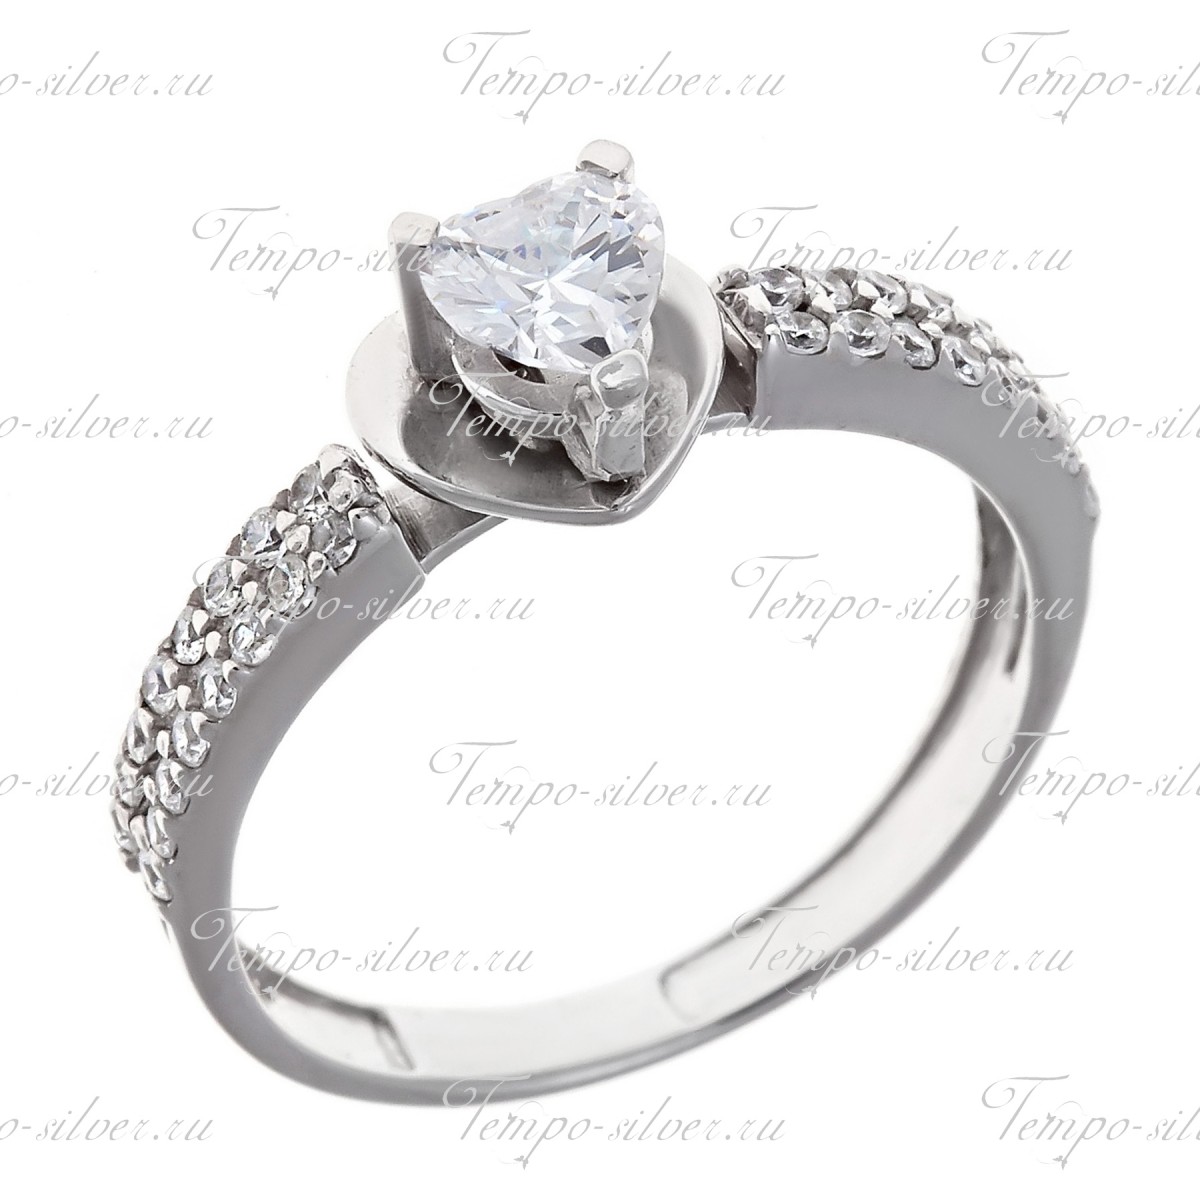 Кольцо из серебра обручального типа с белым камнем на треугольной подножке цена